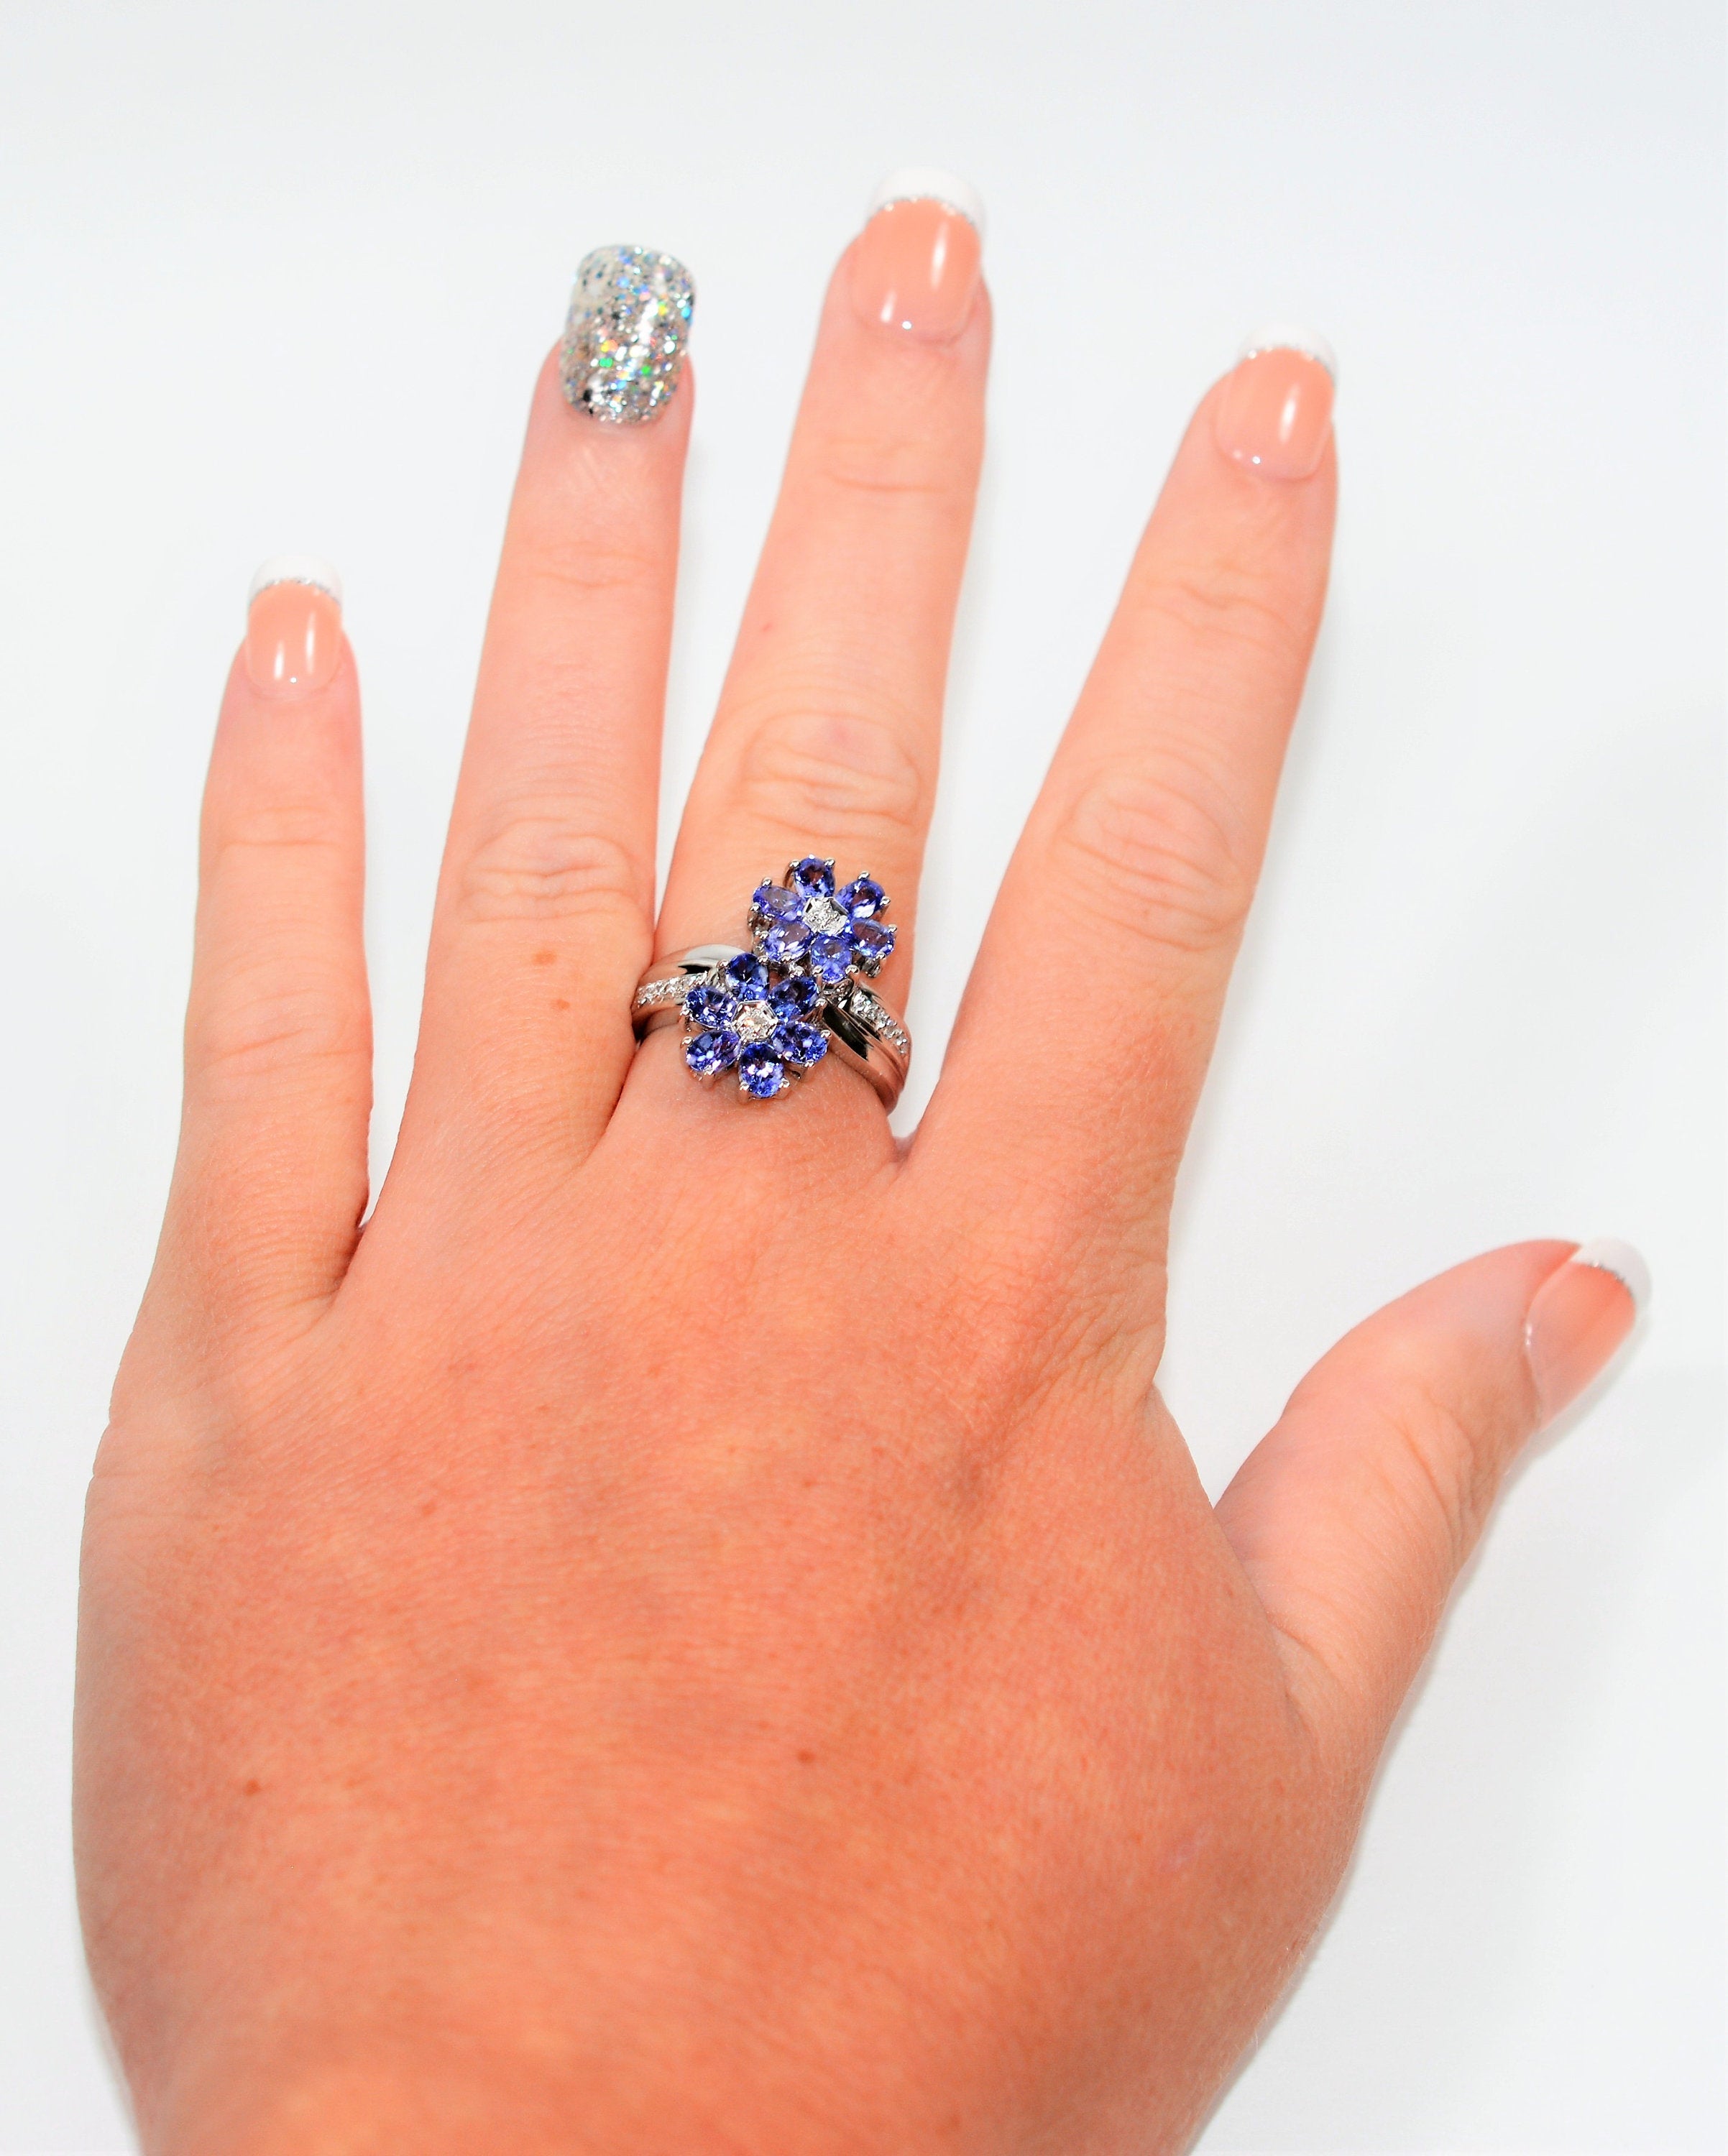 Natural Tanzanite & Diamond Ring 18K Solid White Gold 2.48tcw Flower Ring Cluster Ring Gemstone Ring December Birthstone Ring Women's Ring